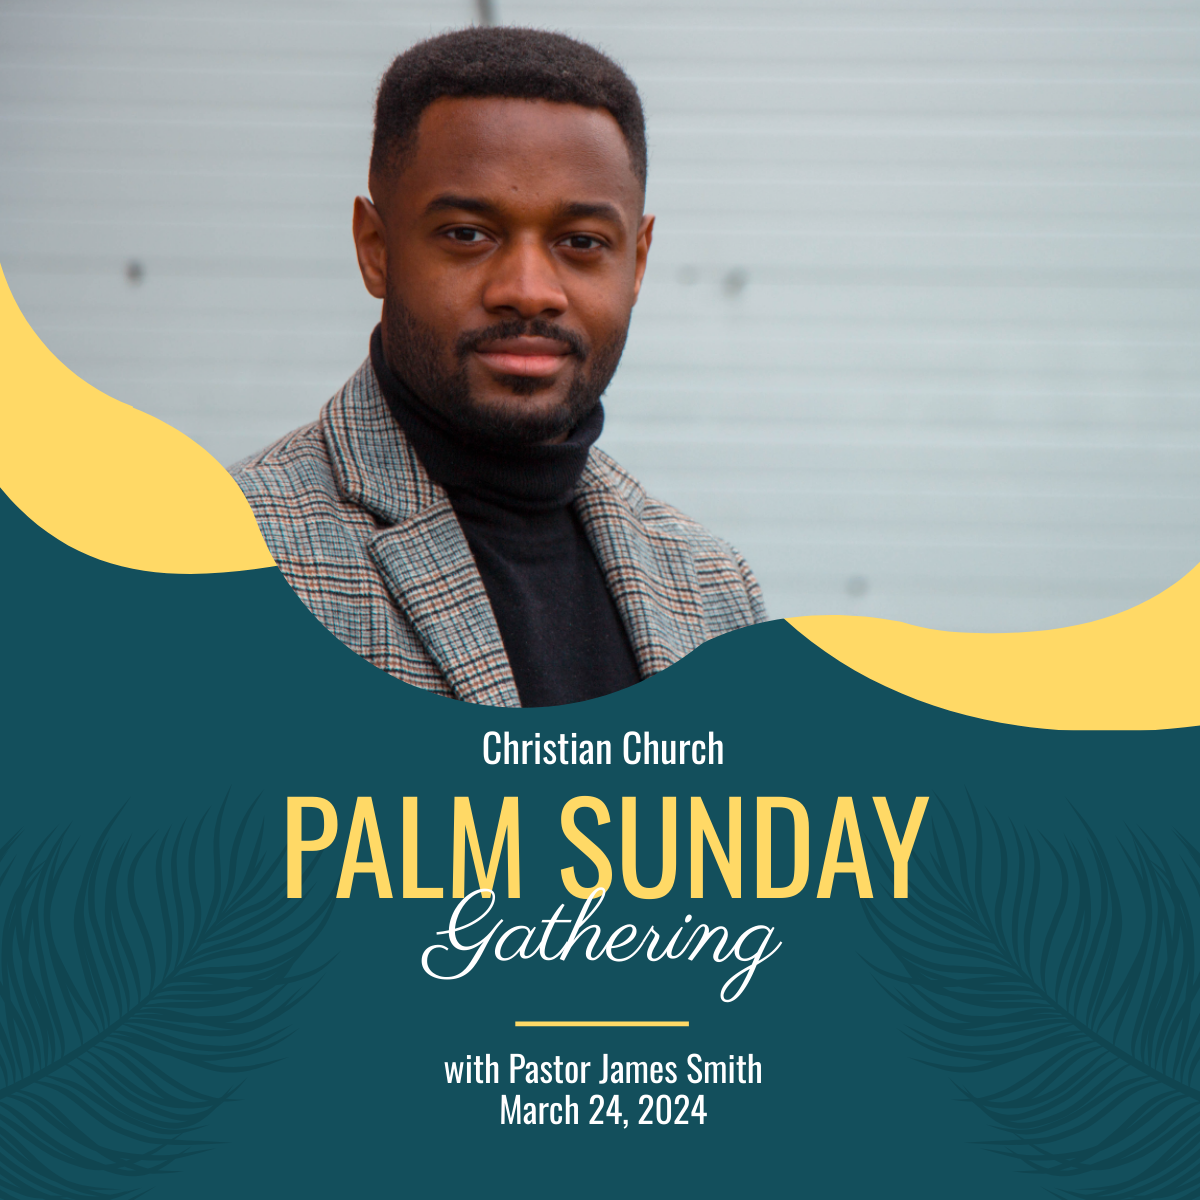 Palm Sunday Celebration Linkedin Post